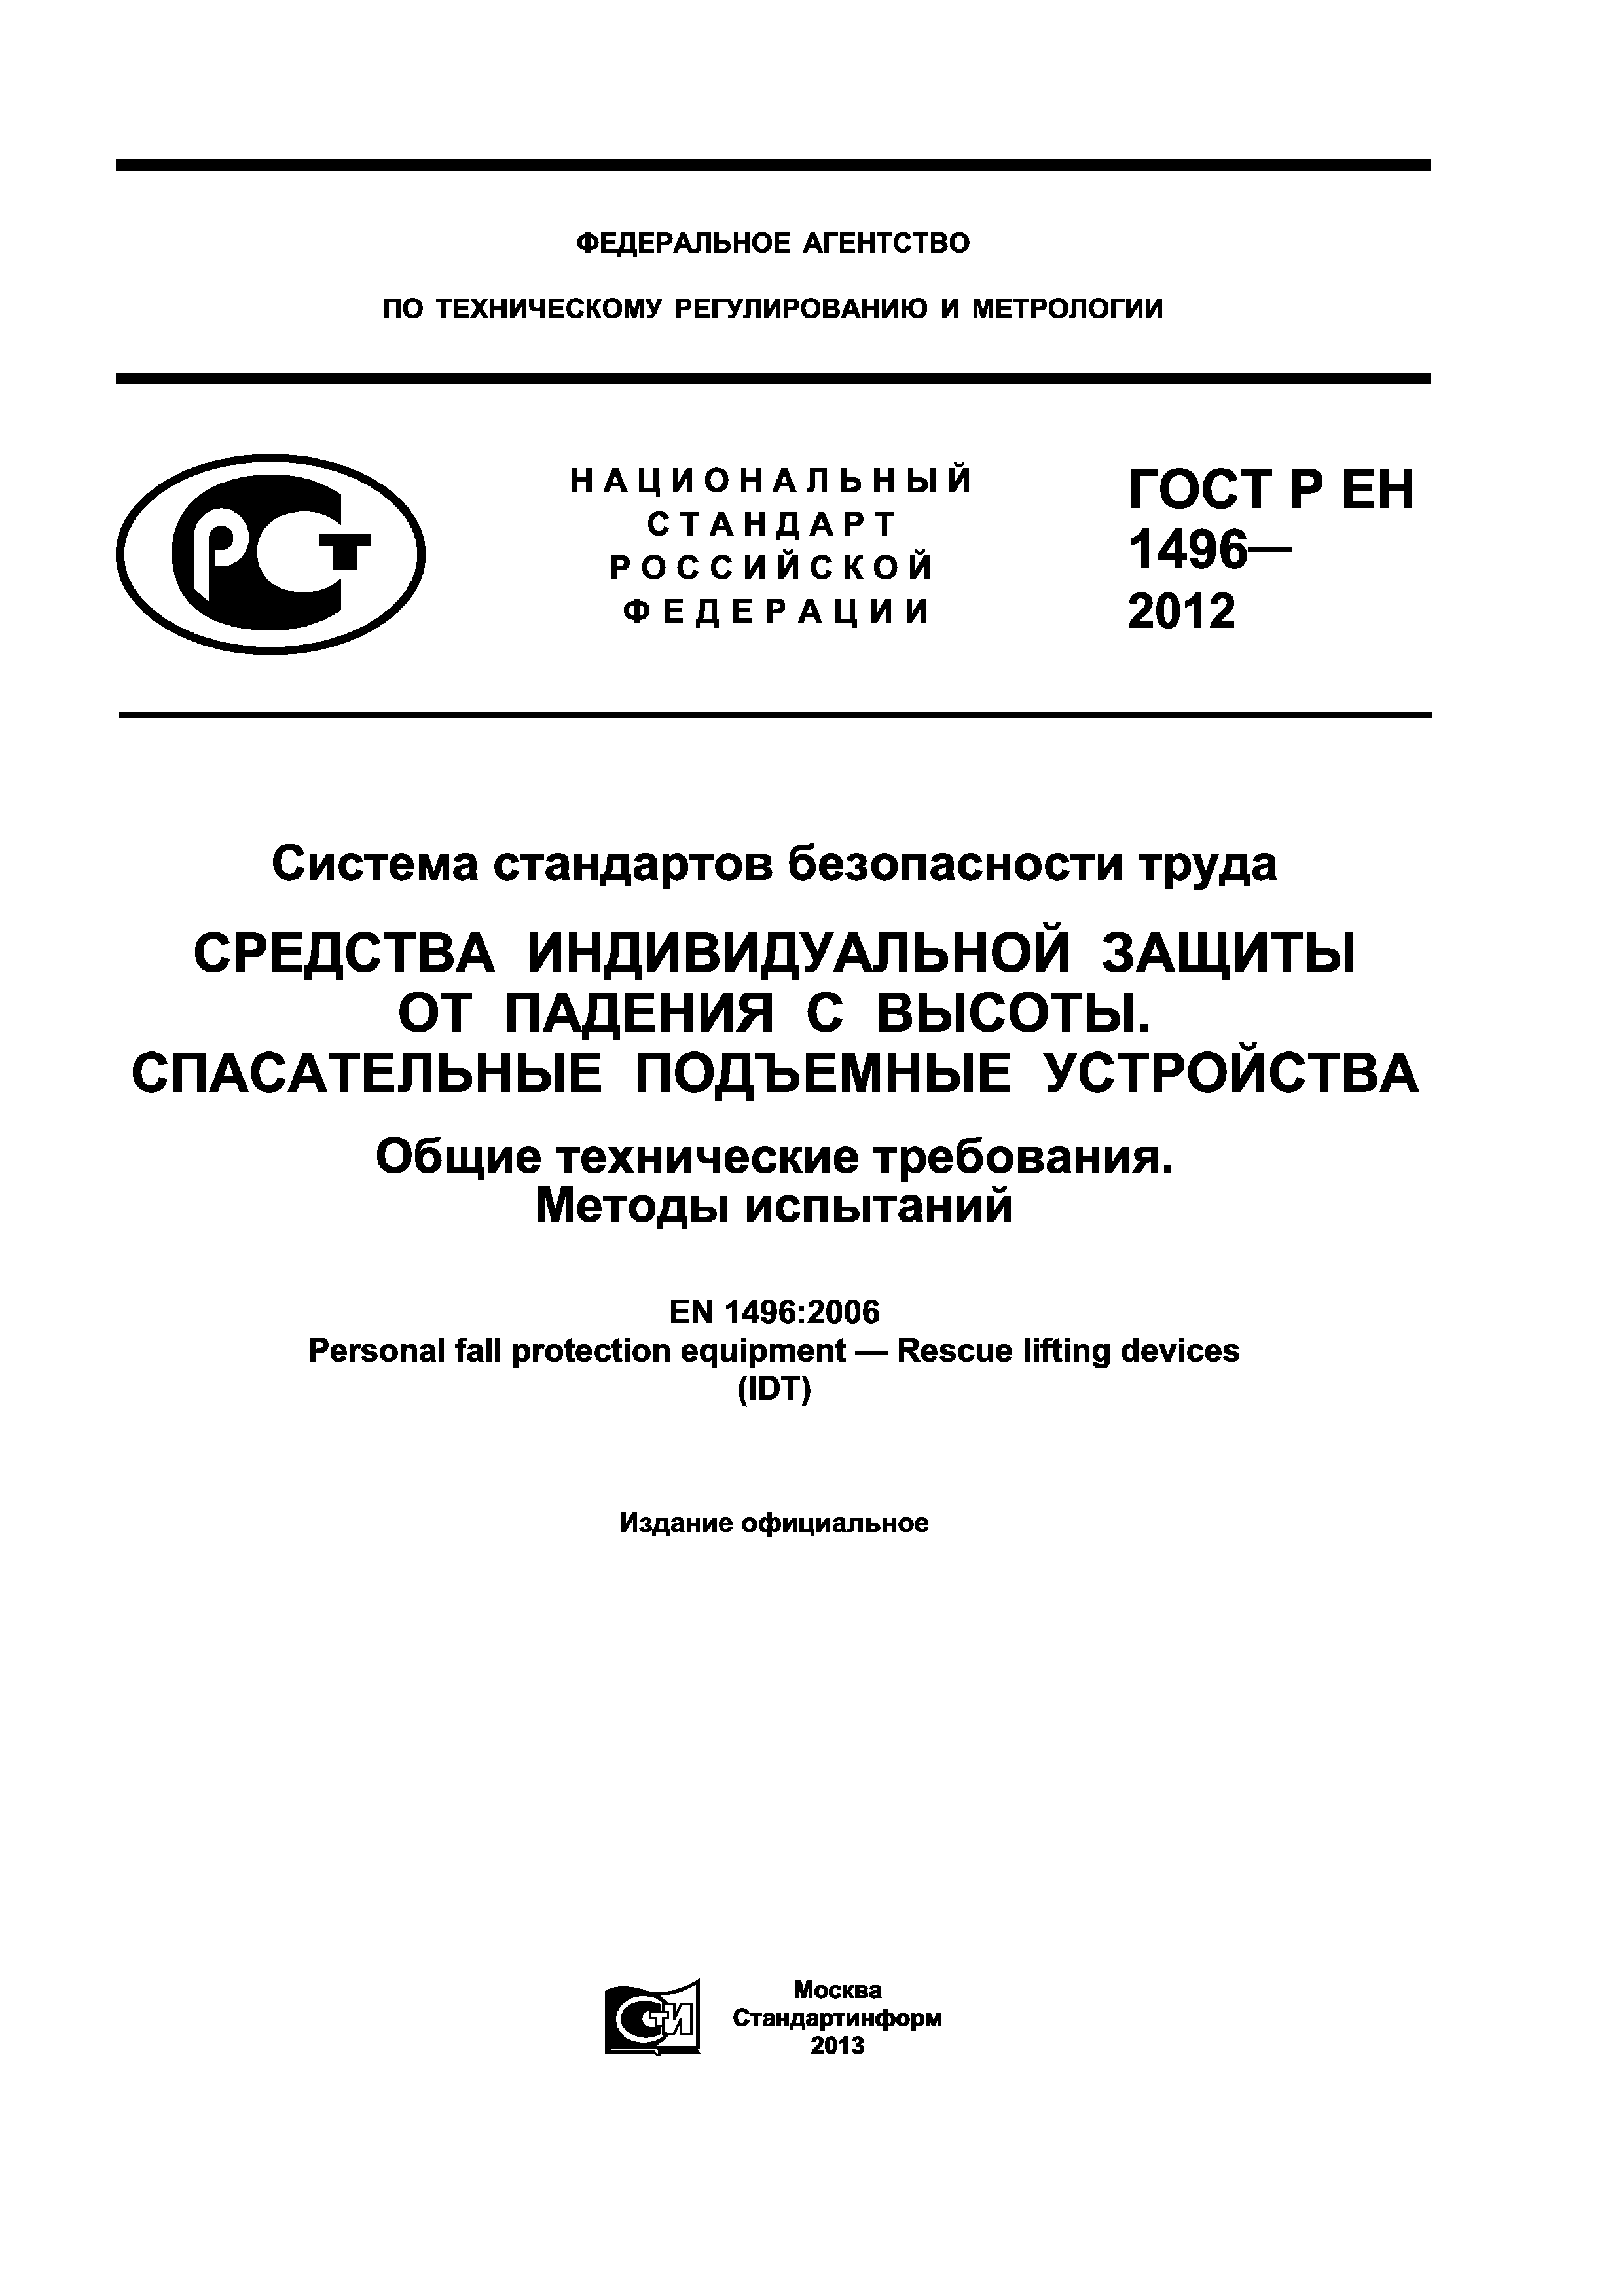 ГОСТ Р ЕН 1496-2012